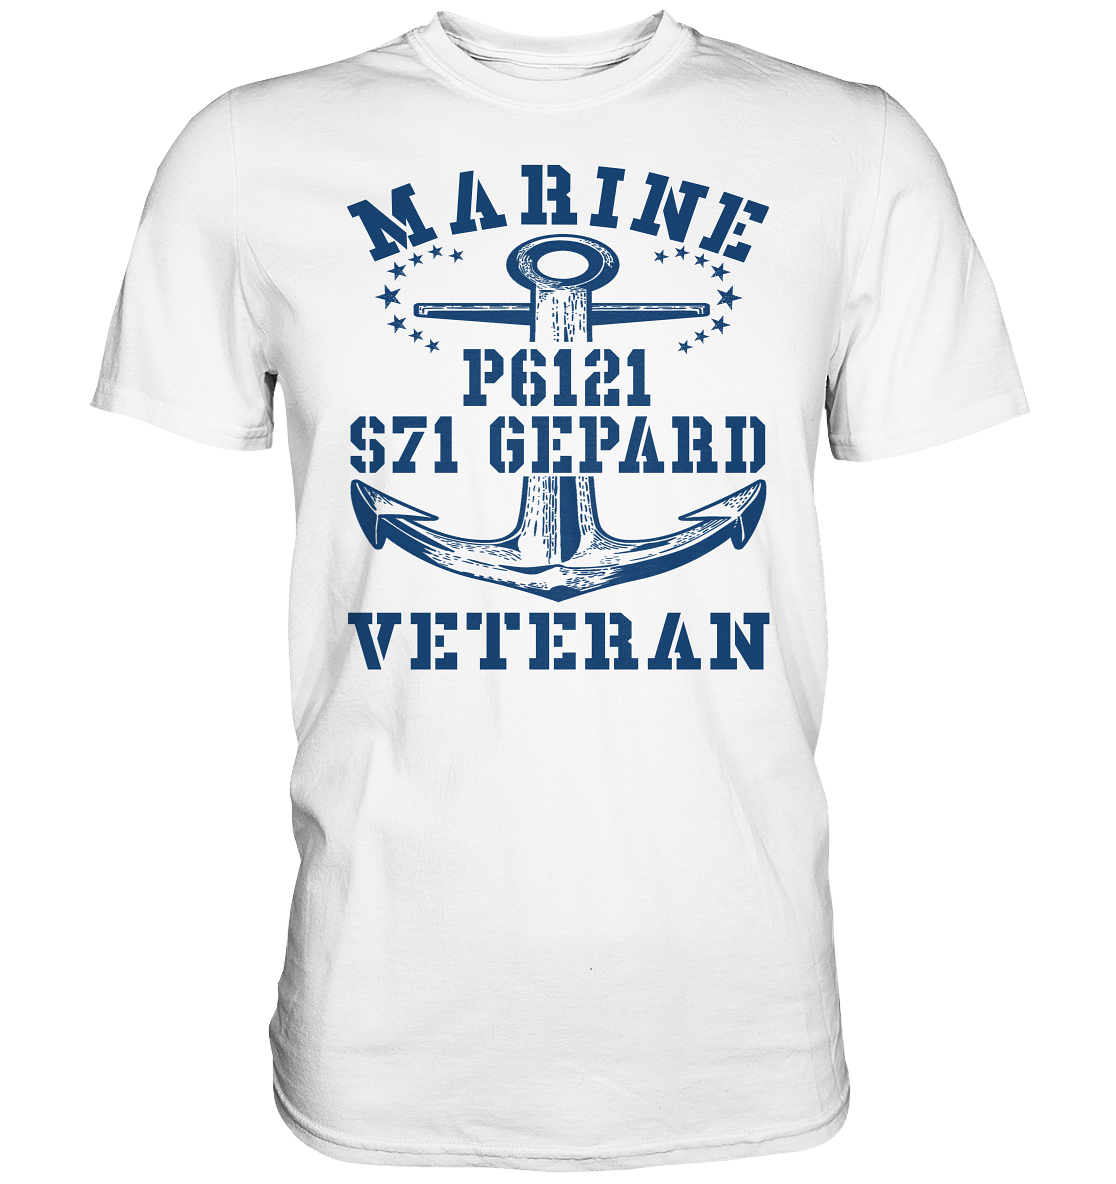 FK-Schnellboot P6121 GEPARD Marine Veteran - Premium Shirt